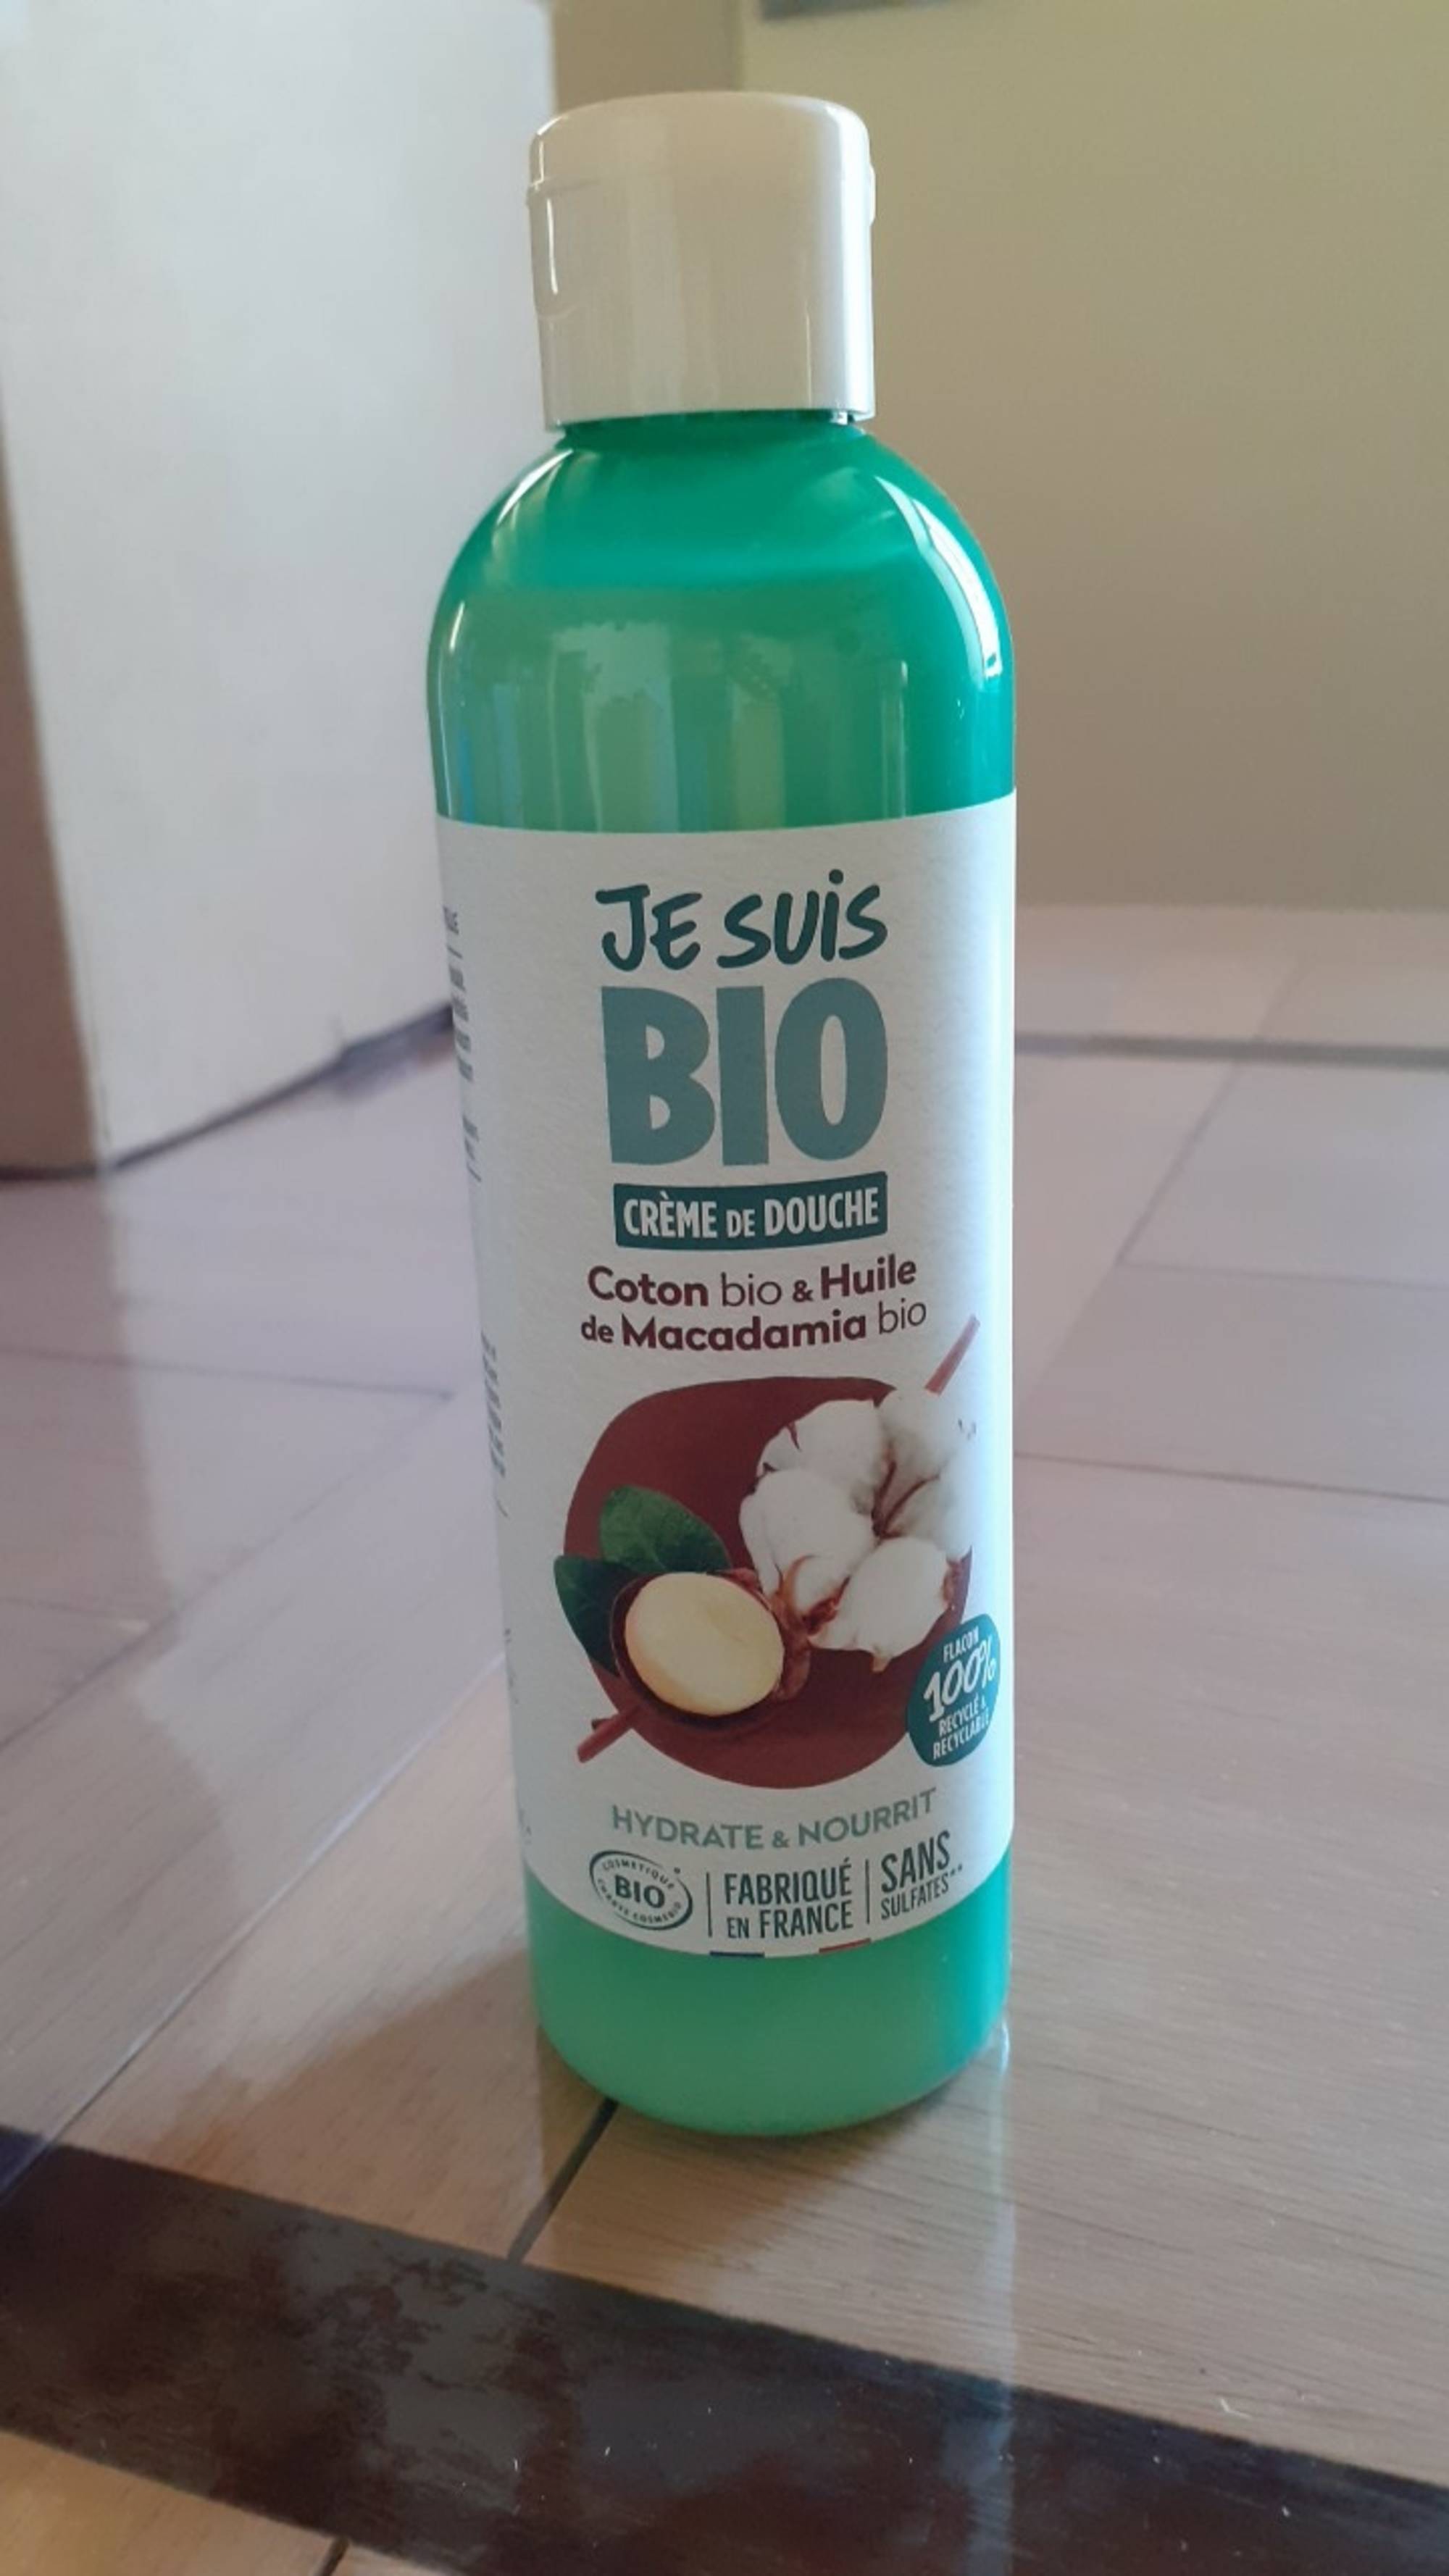 JE SUIS BIO - Crème de douche bio hydrate & nourrit